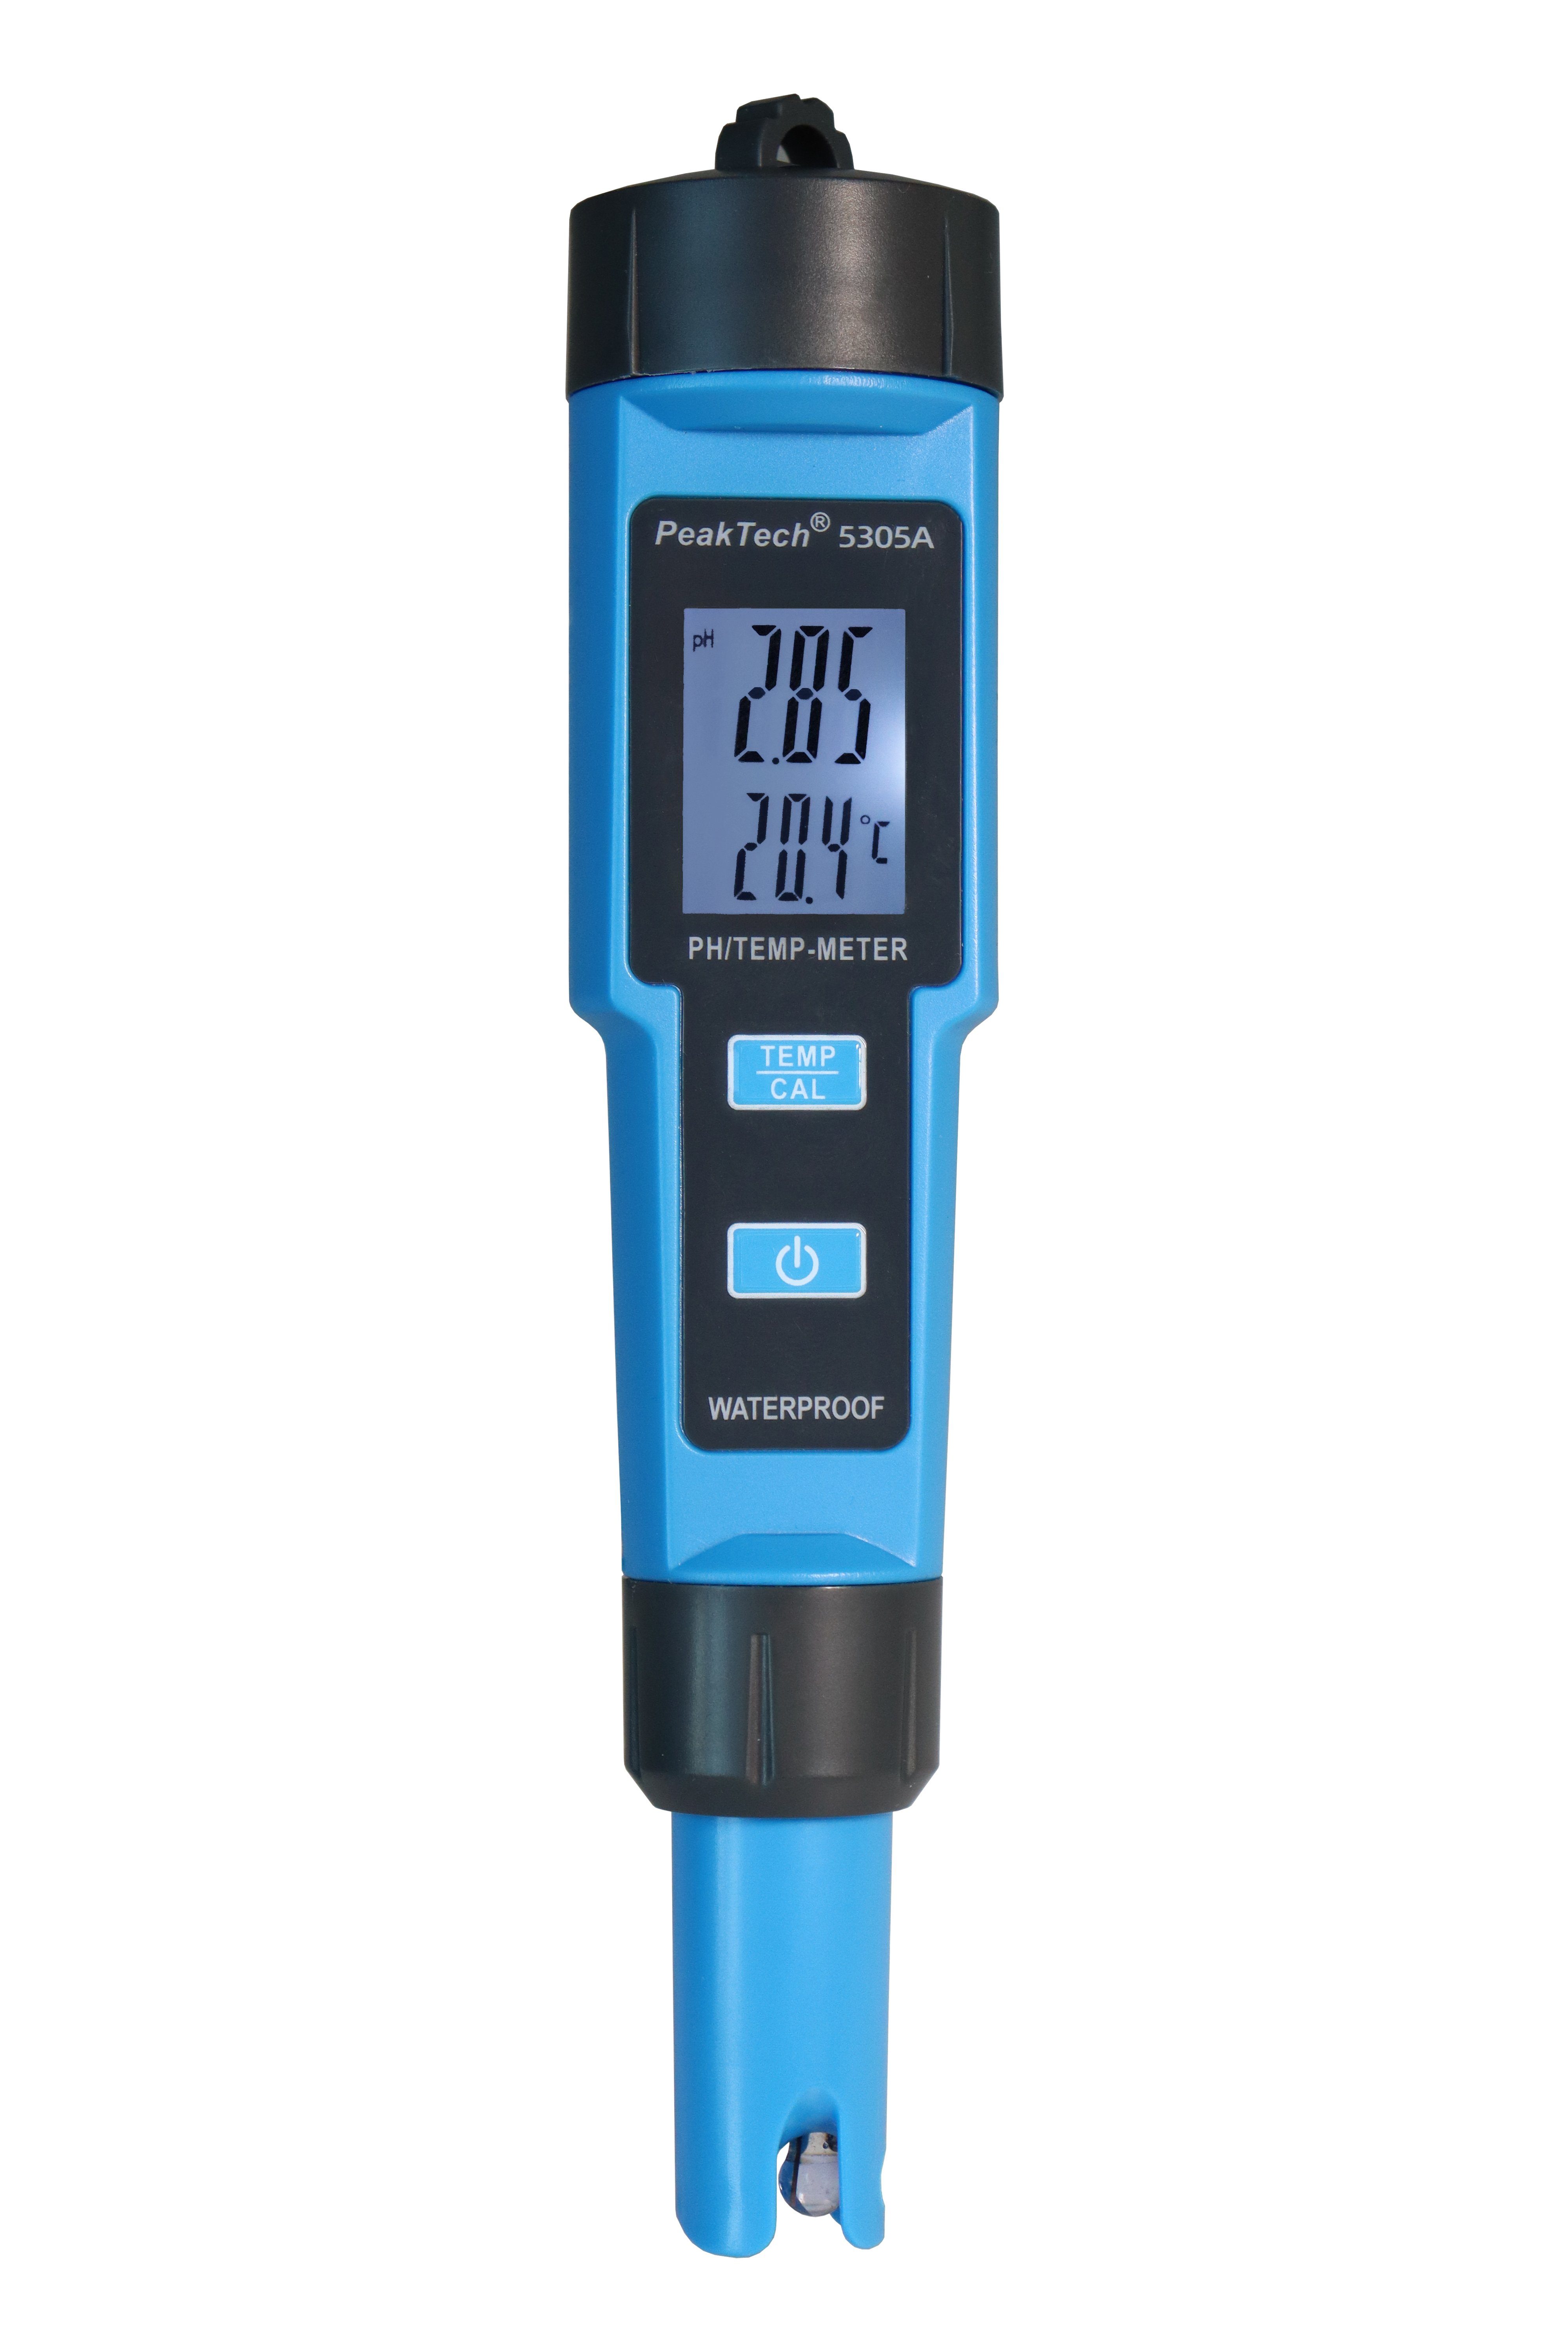 PeakTech Wassersensor PeakTech 5305 A: PH- und Wassertemperaturmesser ~ bis 14 pH und 50°C